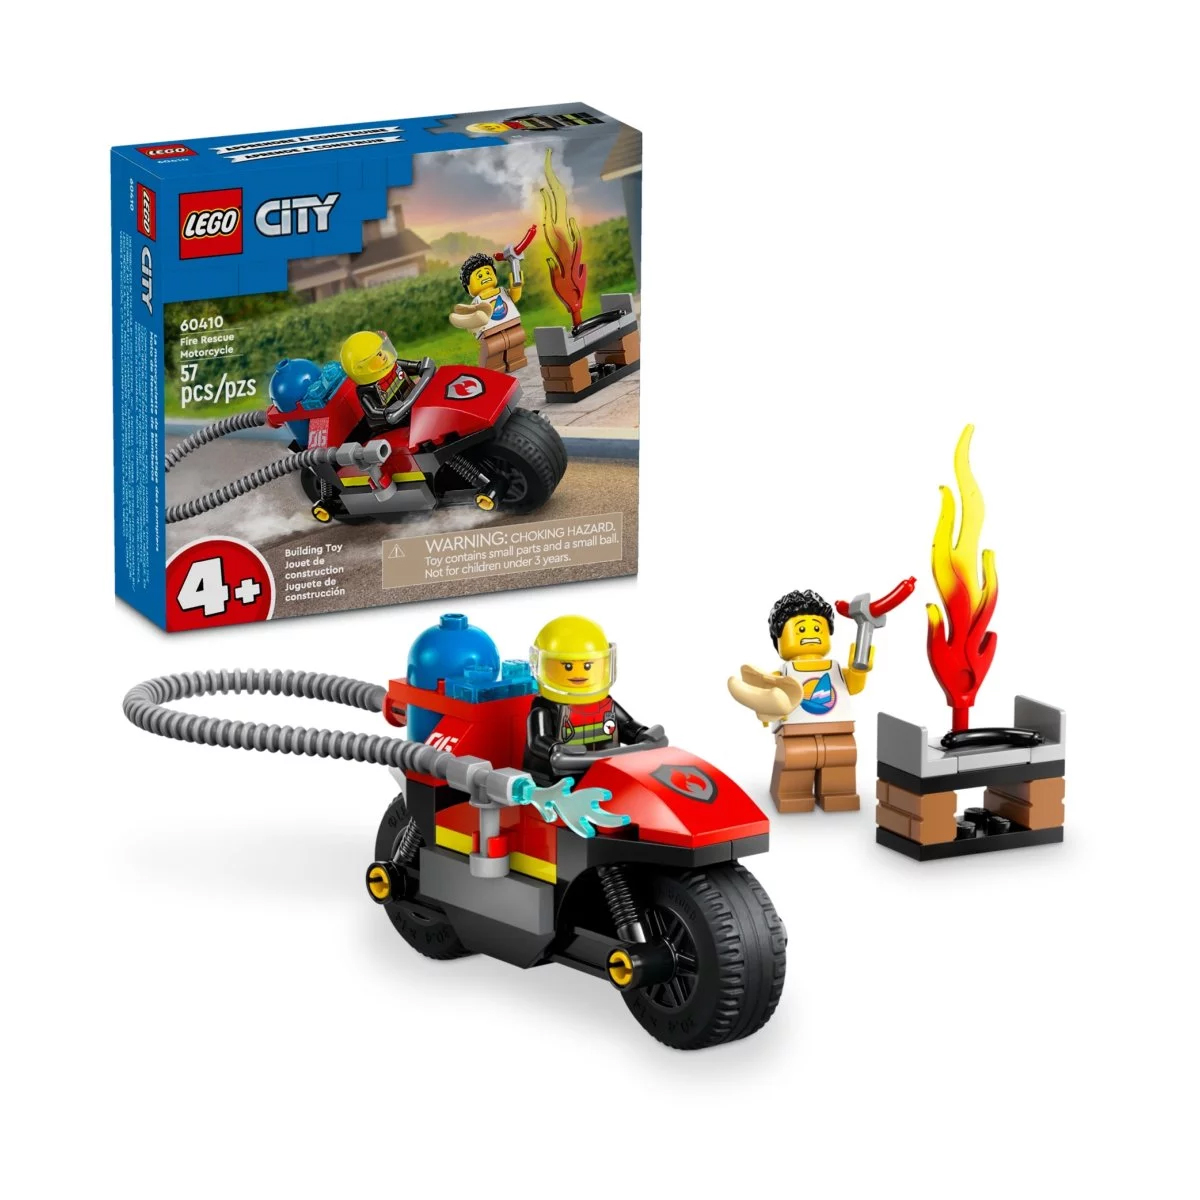 Конструктор Lego City Fire Rescue Motorcycle 60410, 57 деталей игрушка конструктор спасательный внедорожник для зверей lego city wildlife 60301 4 157 элементов